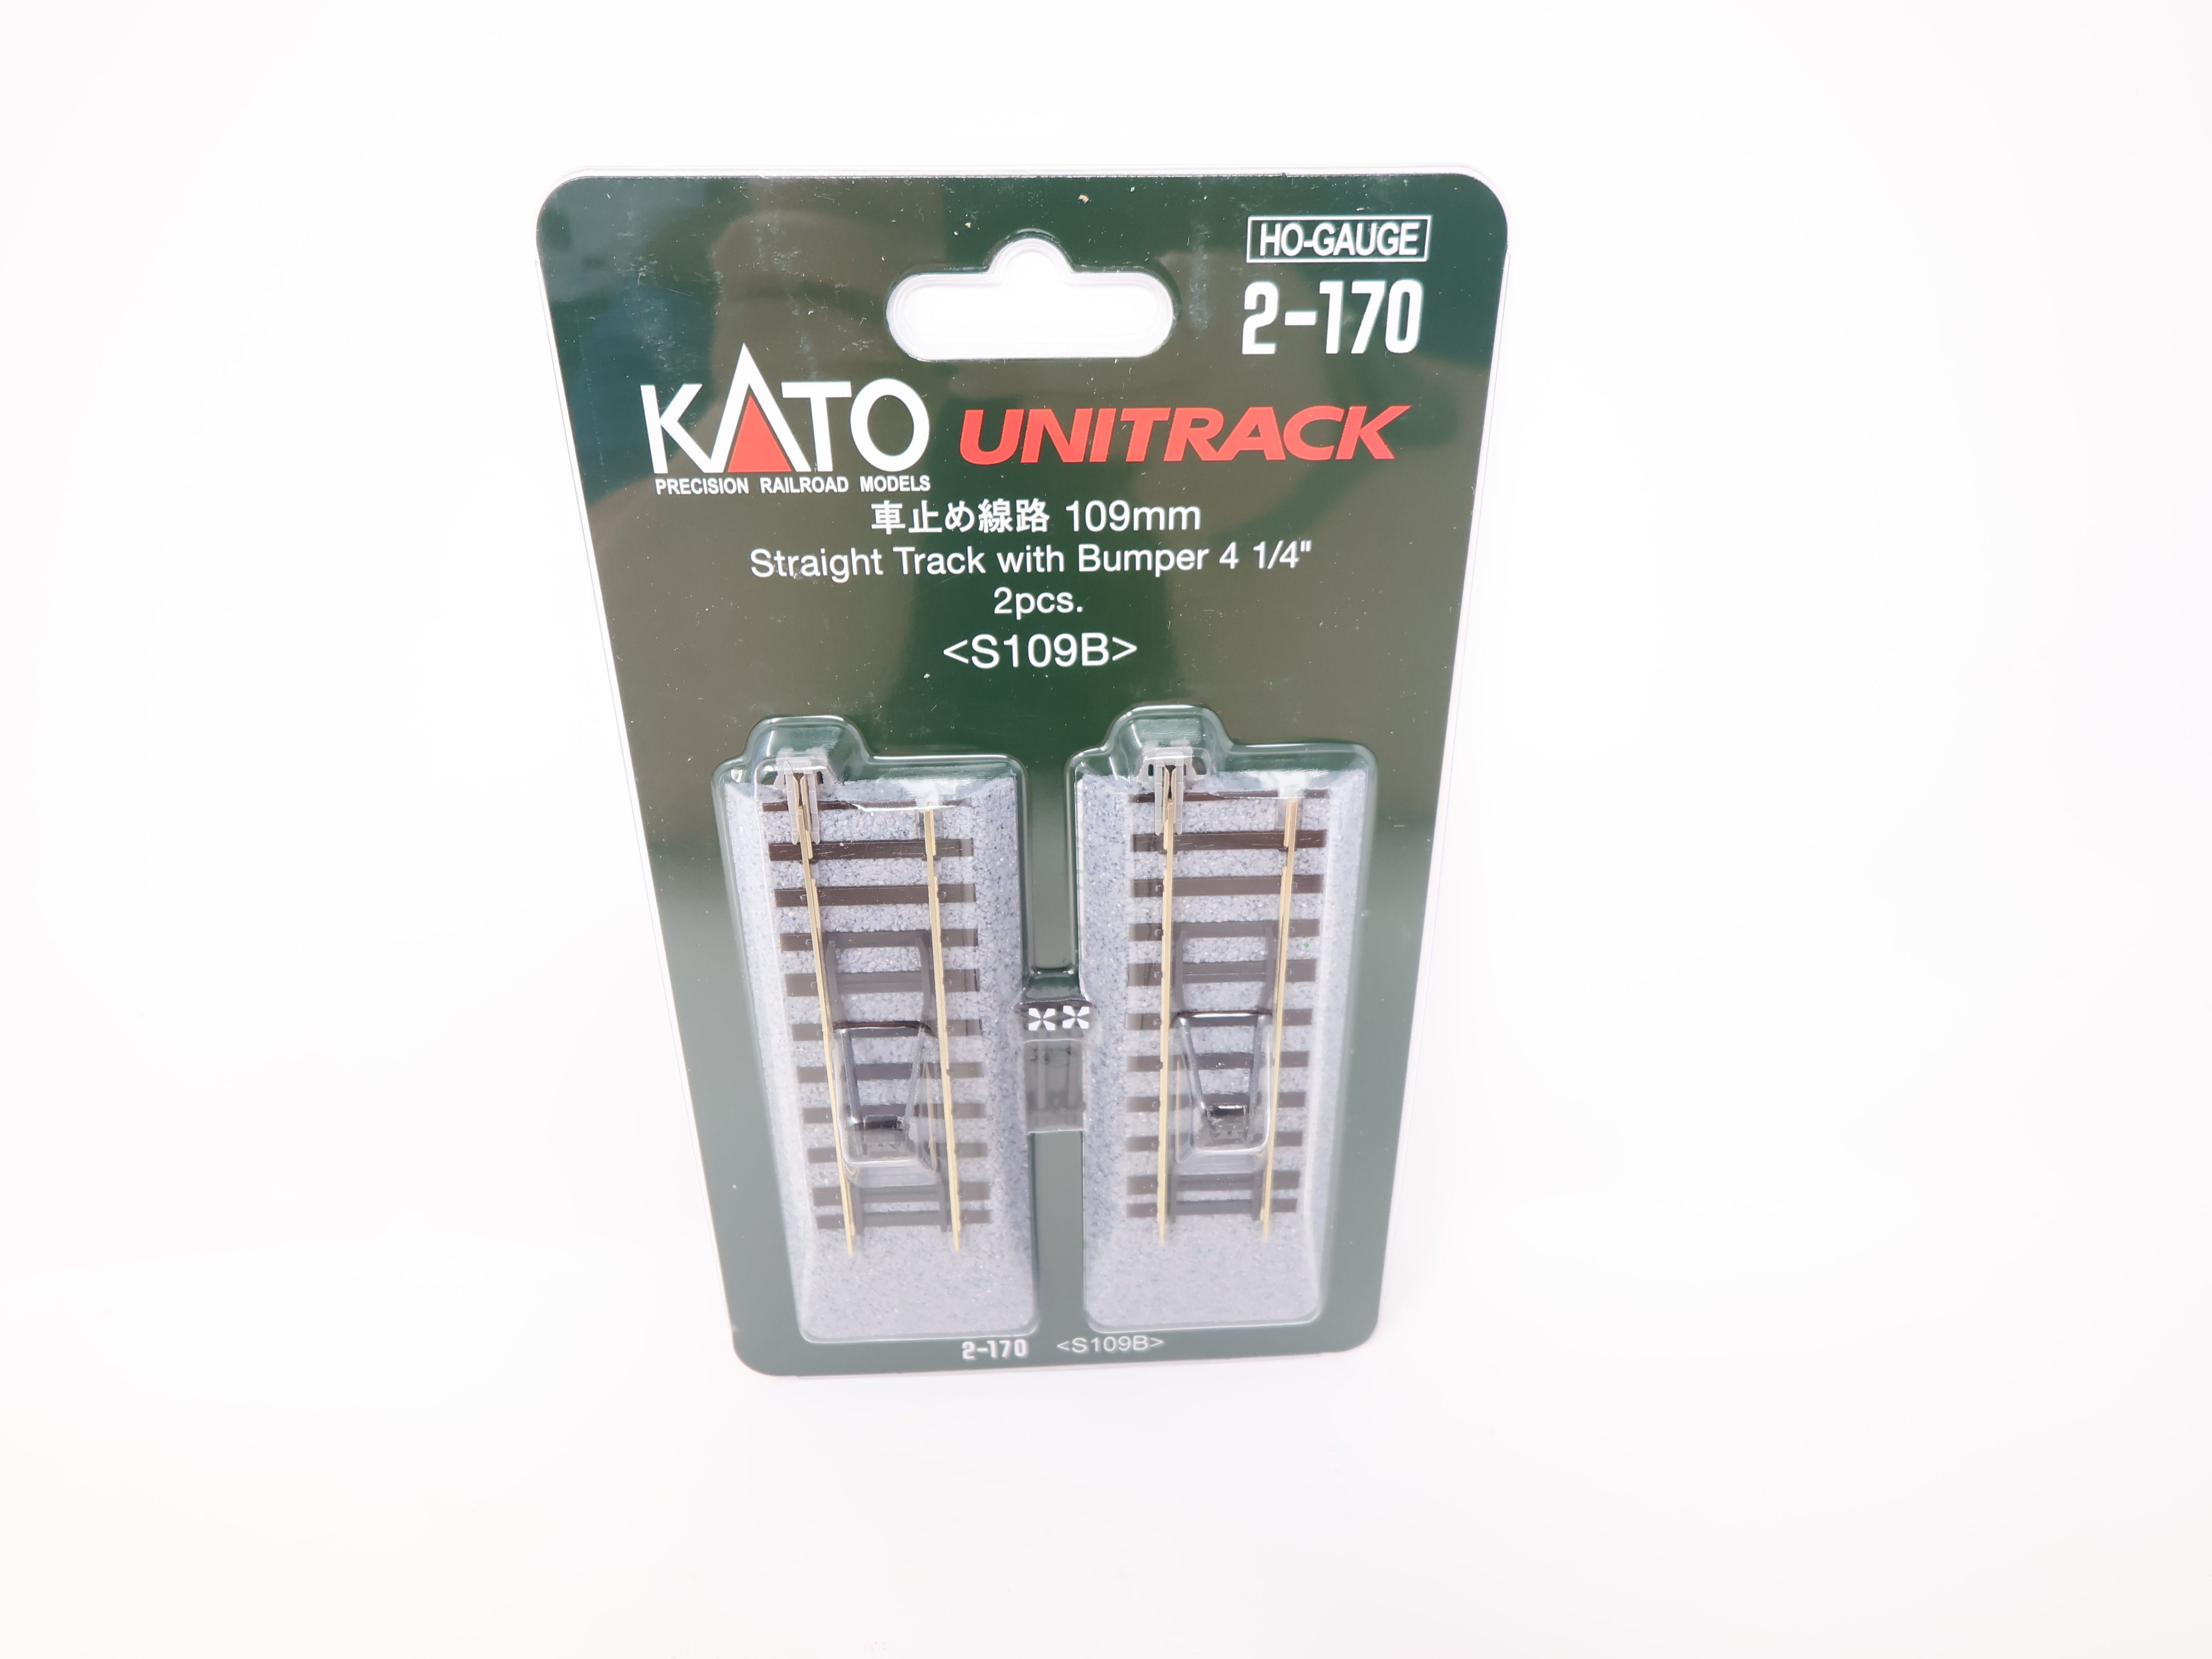 KATO 2-170 HO Scale, Unitrack 4 1/4" Straight Track with Bumper (2), Code 83